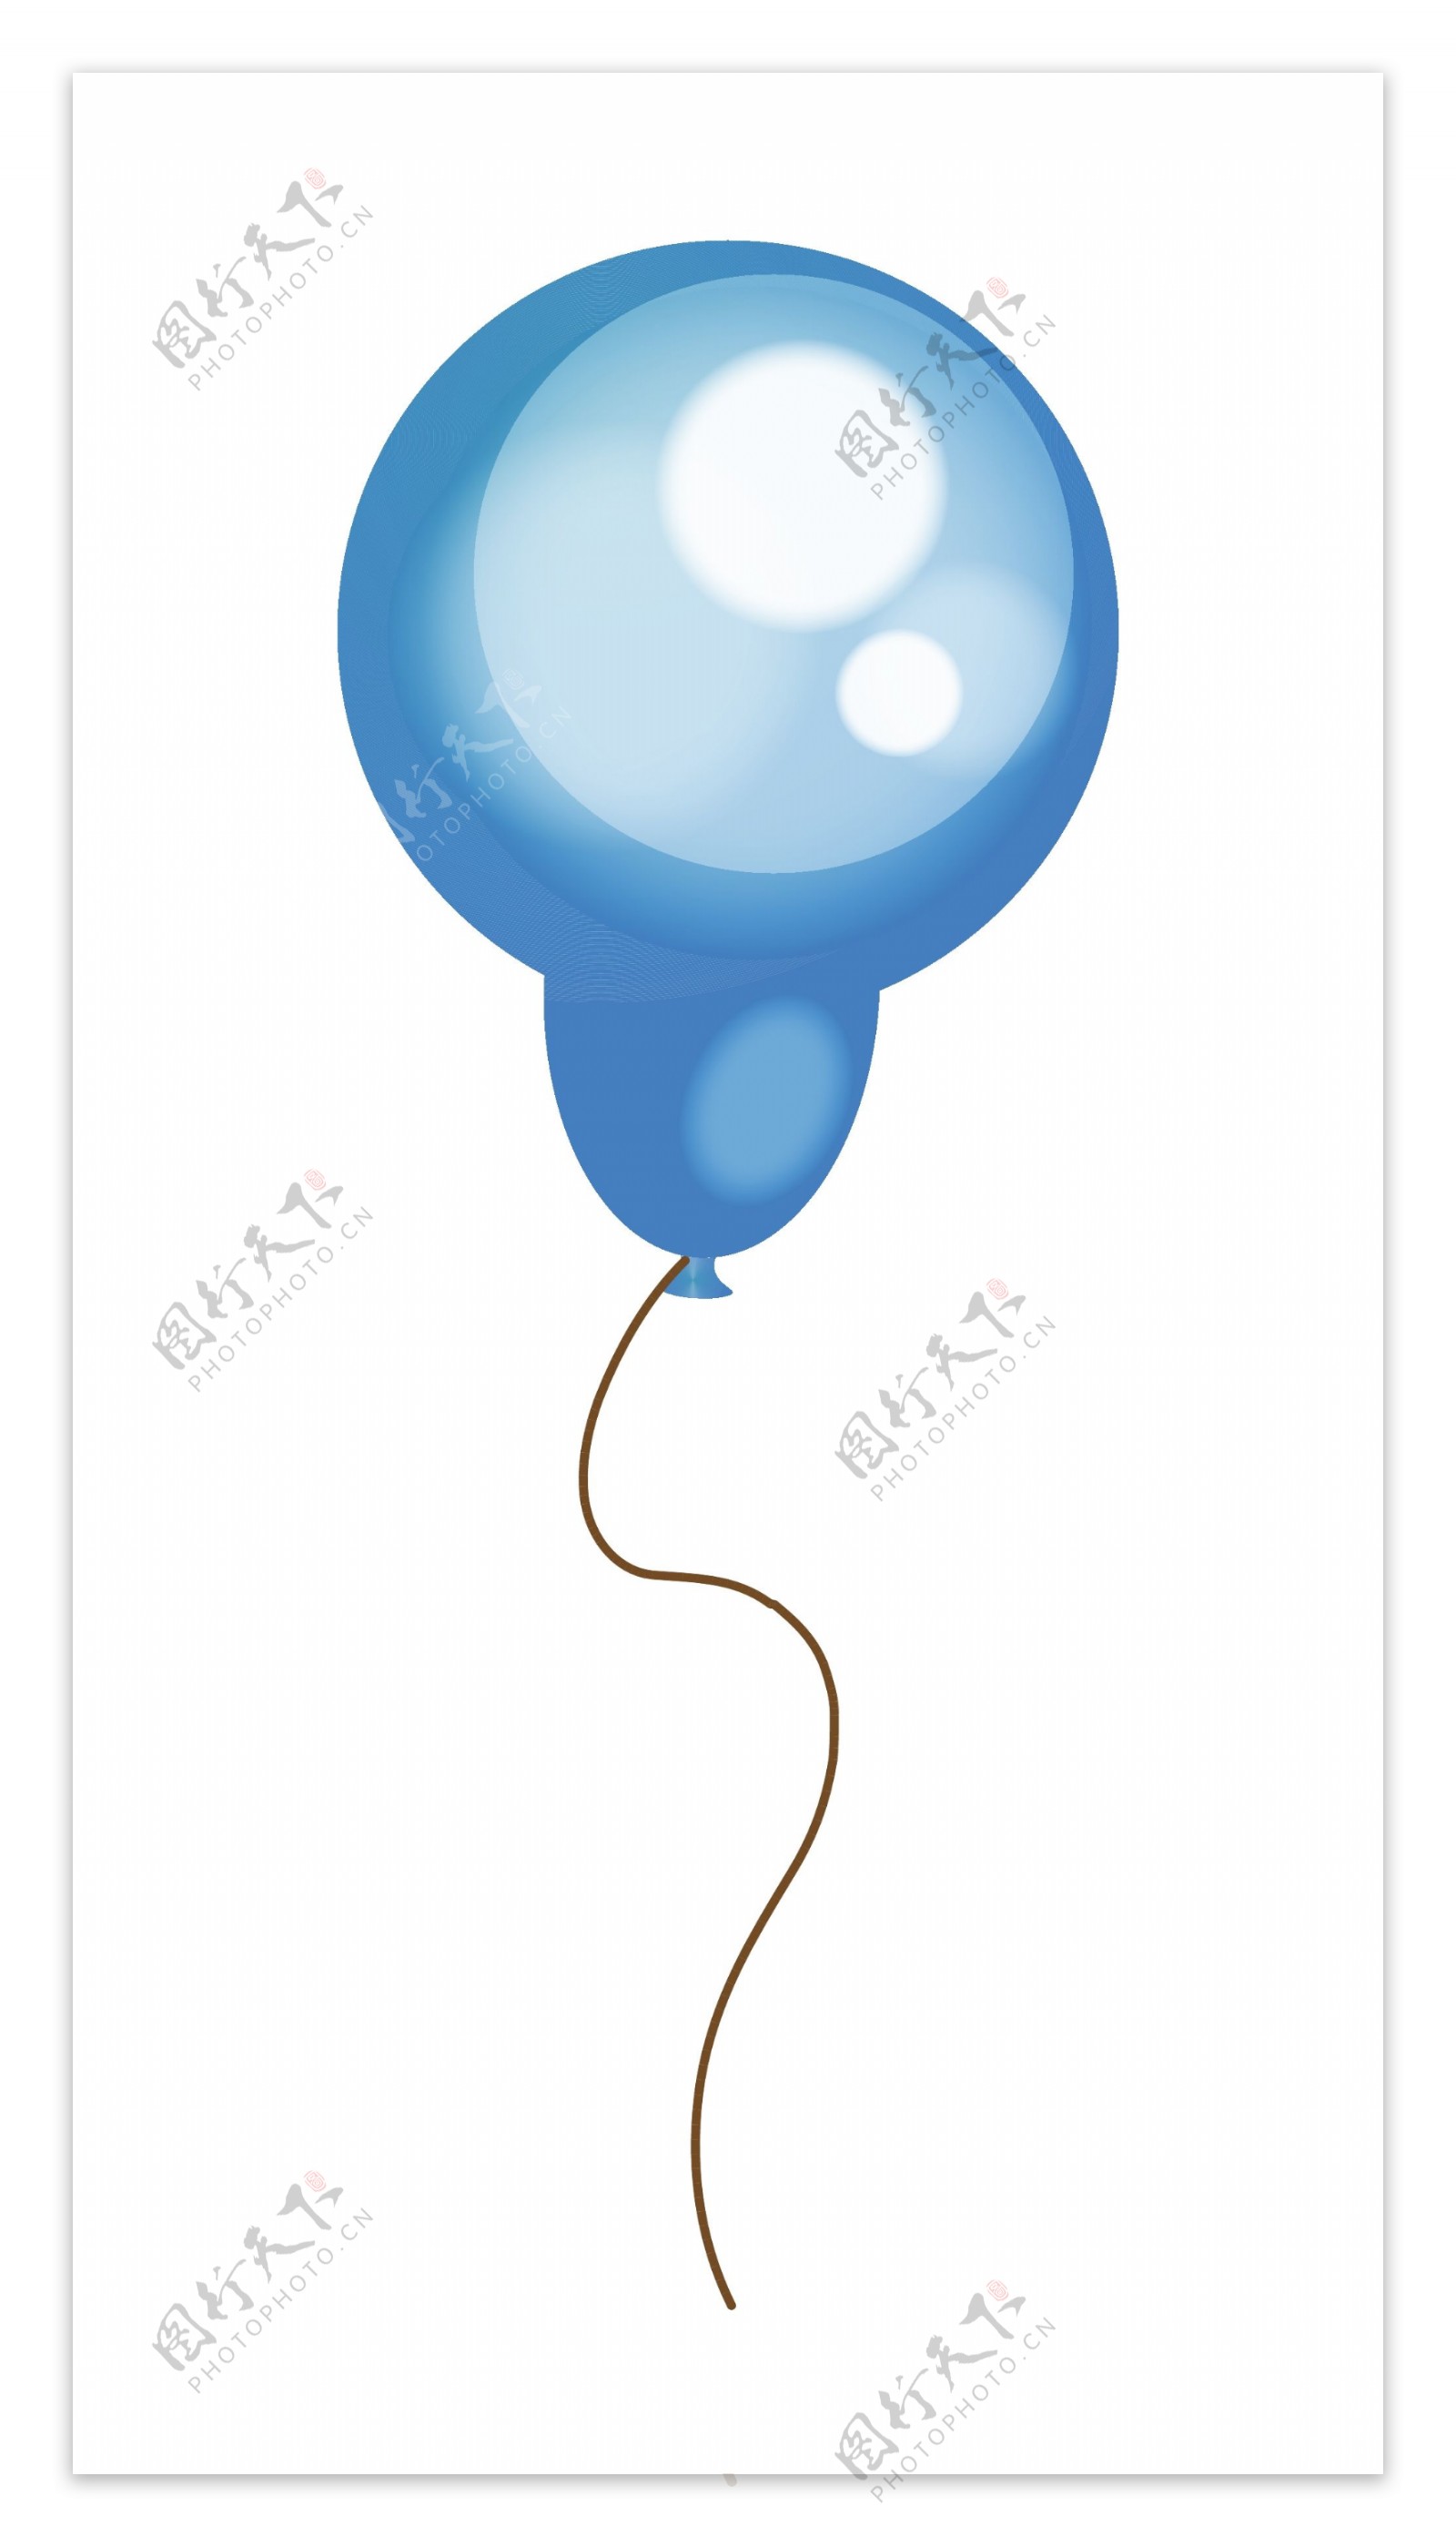 明亮的蓝色气球形状向量